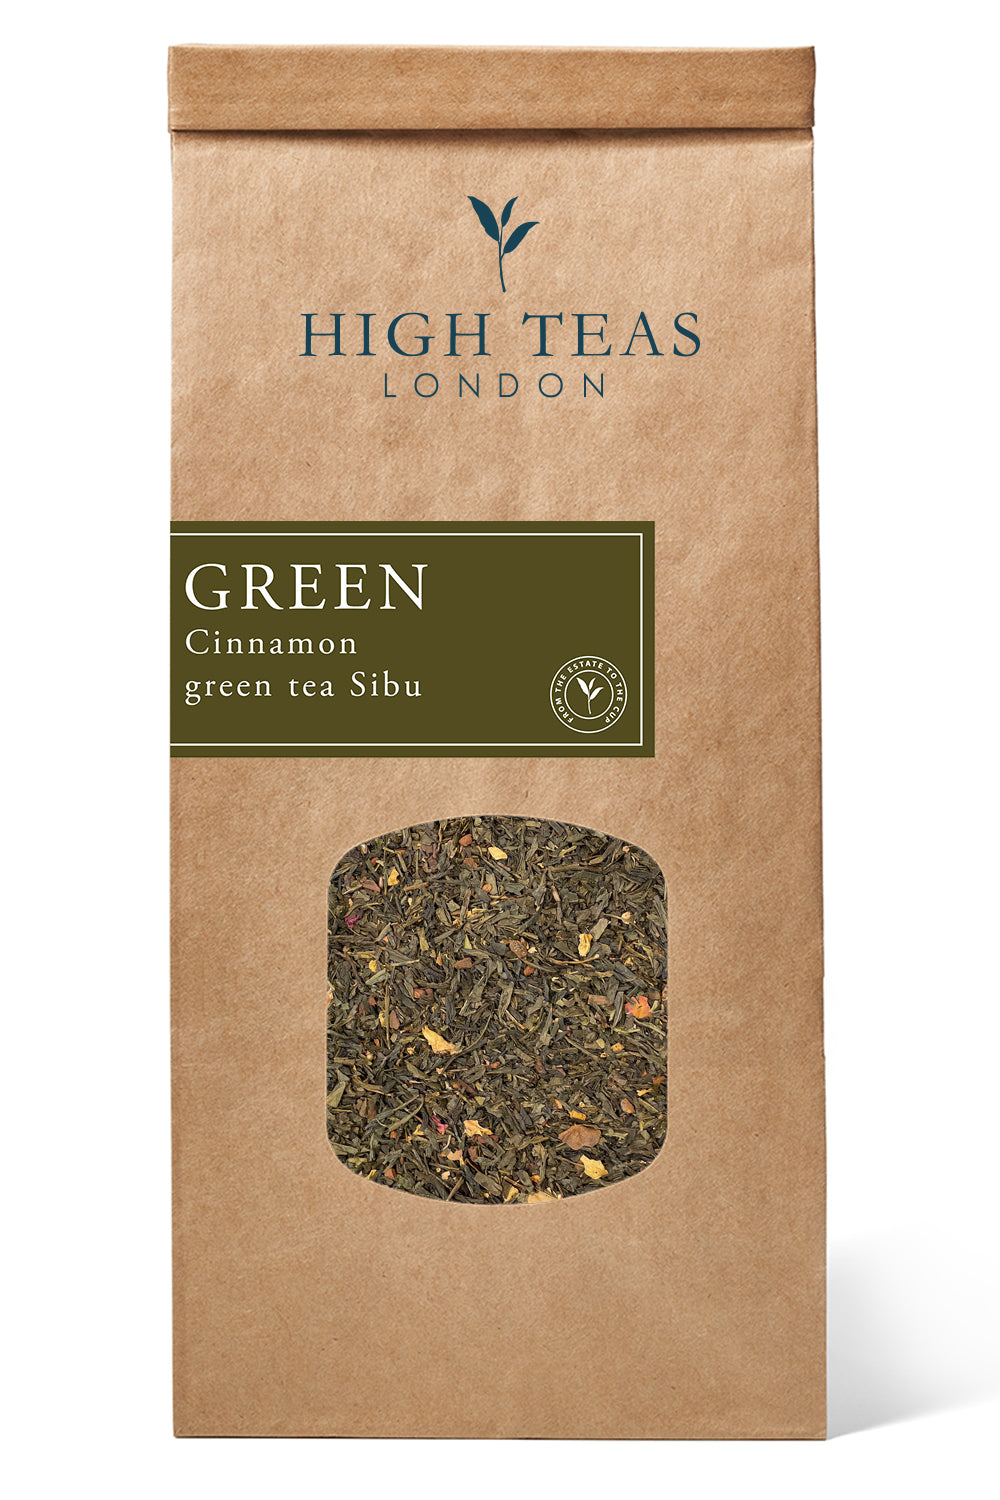 Cinnamon Sibu Green Tea-250g-Loose Leaf Tea-High Teas